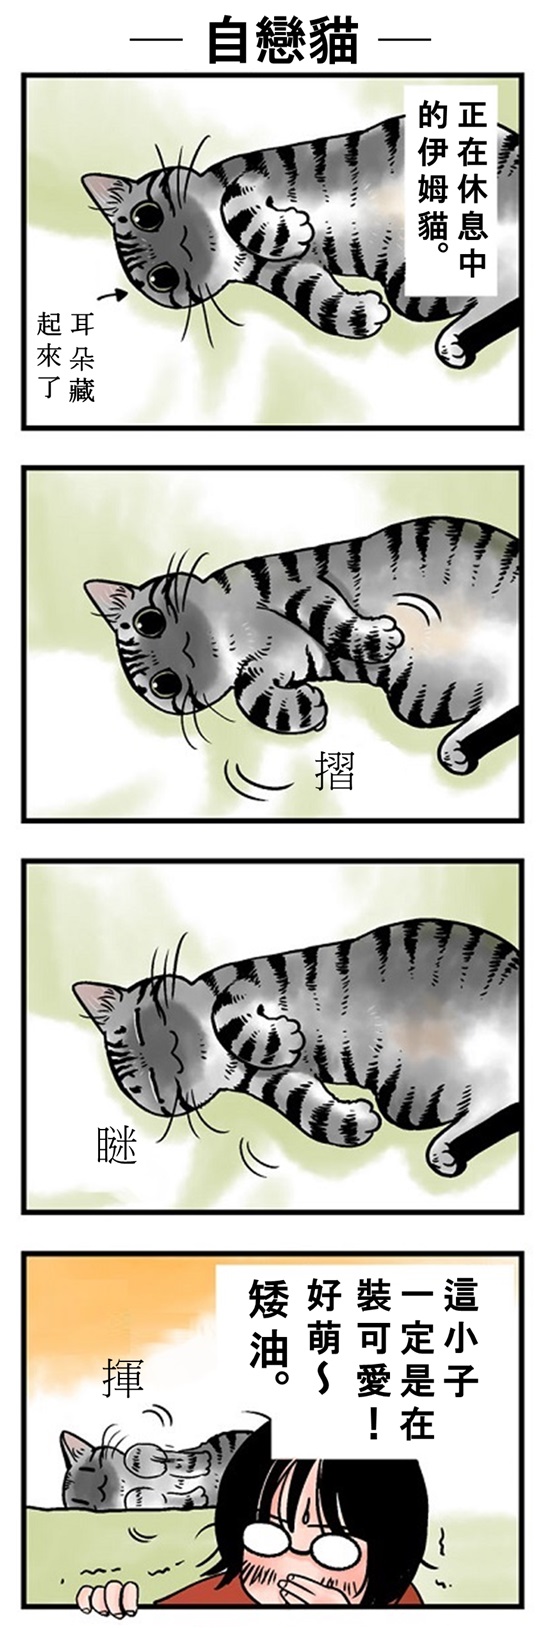 ★山野りんりん猫まみれ漫画★84話-2.jpg